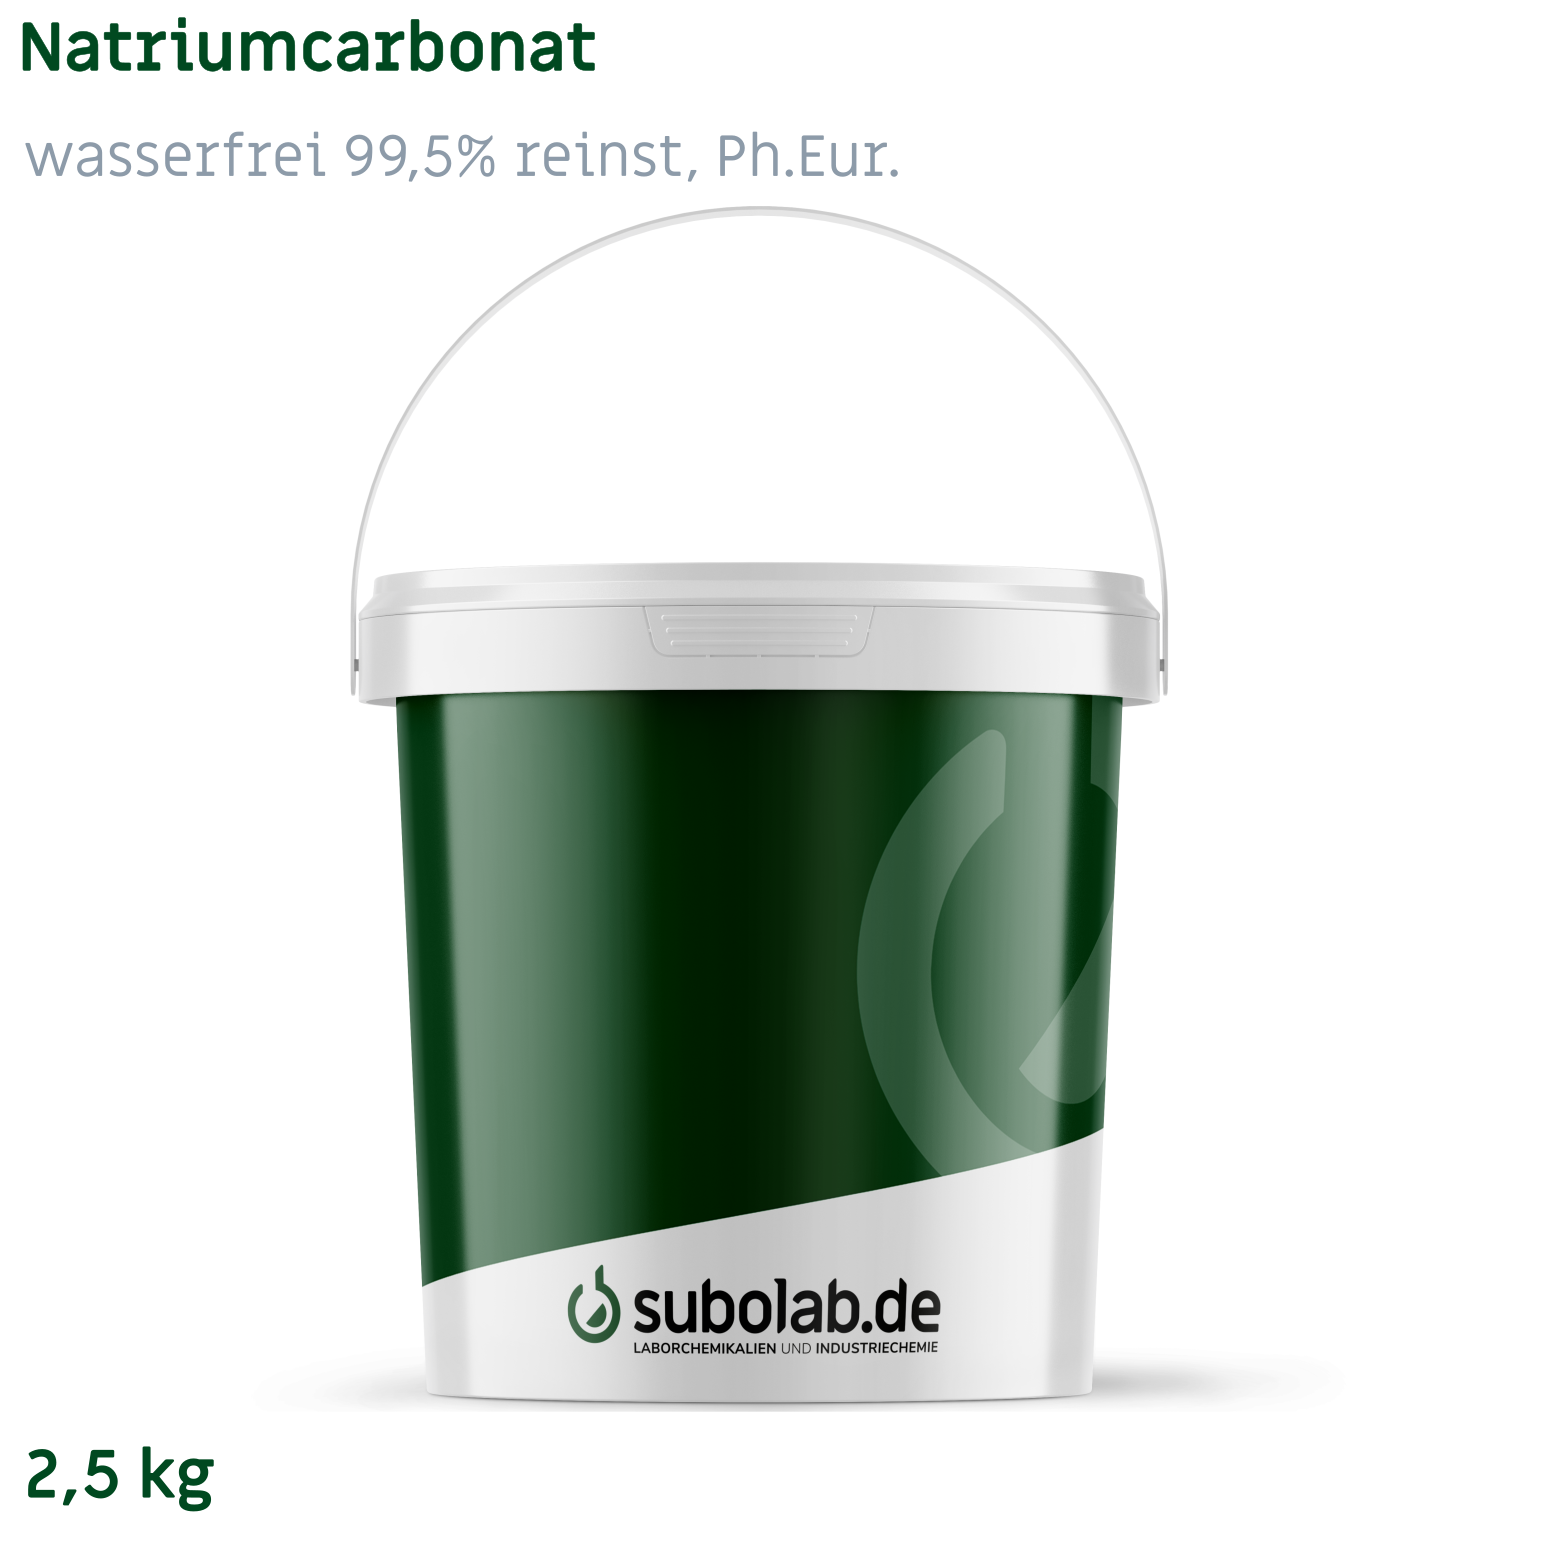 Bild von Natriumcarbonat - wasserfrei 99,5% reinst, Ph.Eur. (2,5 kg)